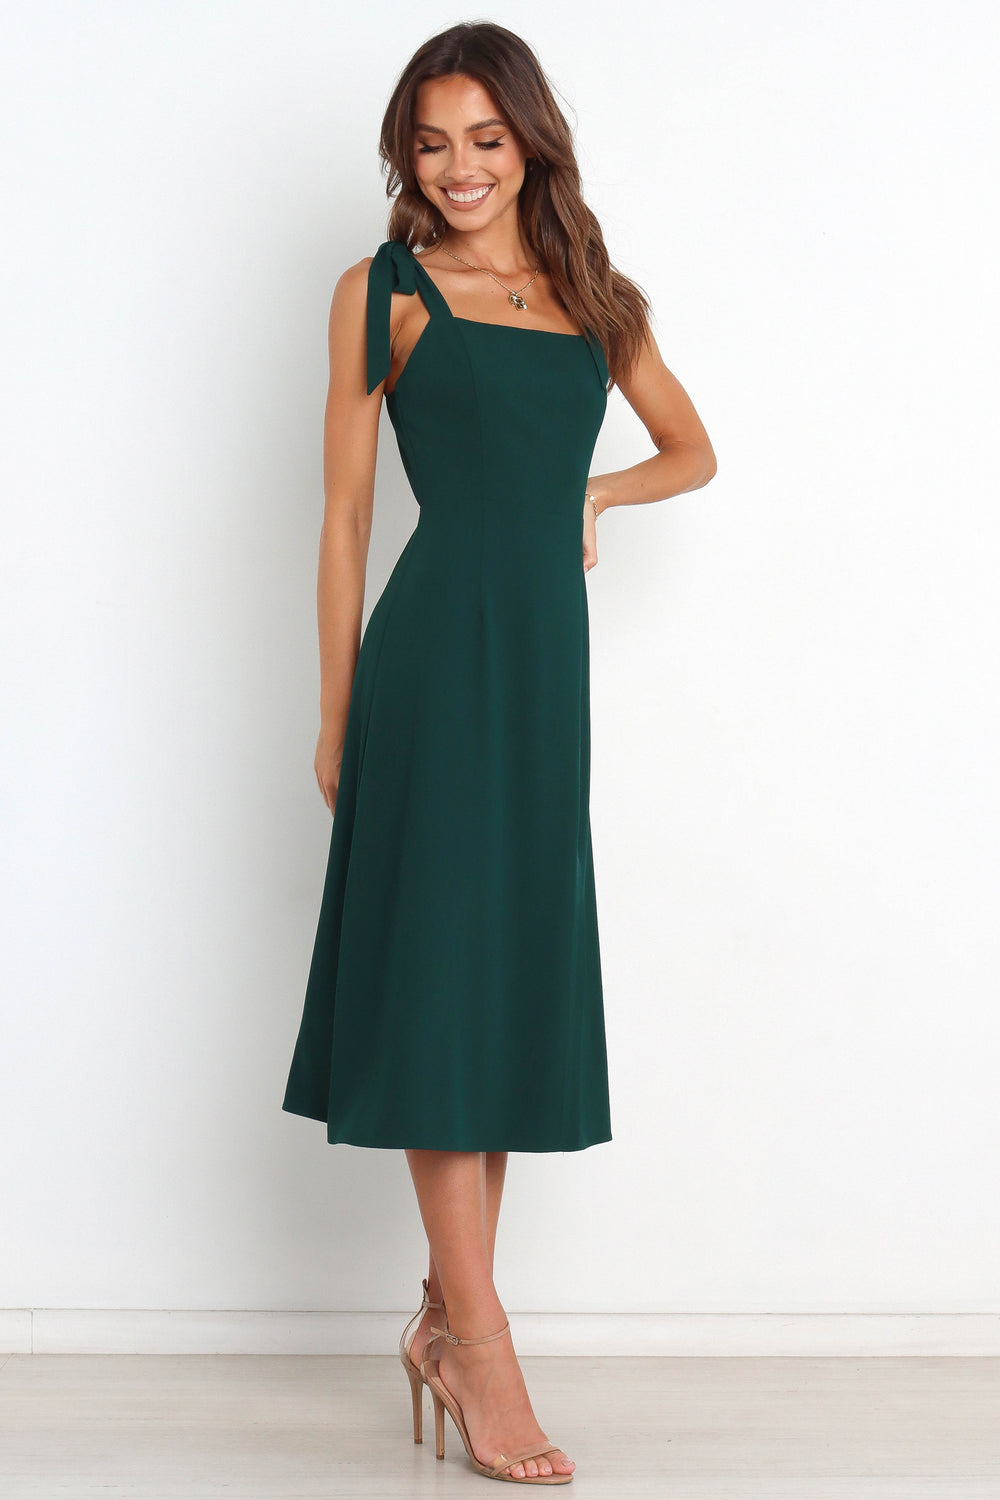 Petal and Pup USA DRESSES Laurel Dress - Emerald